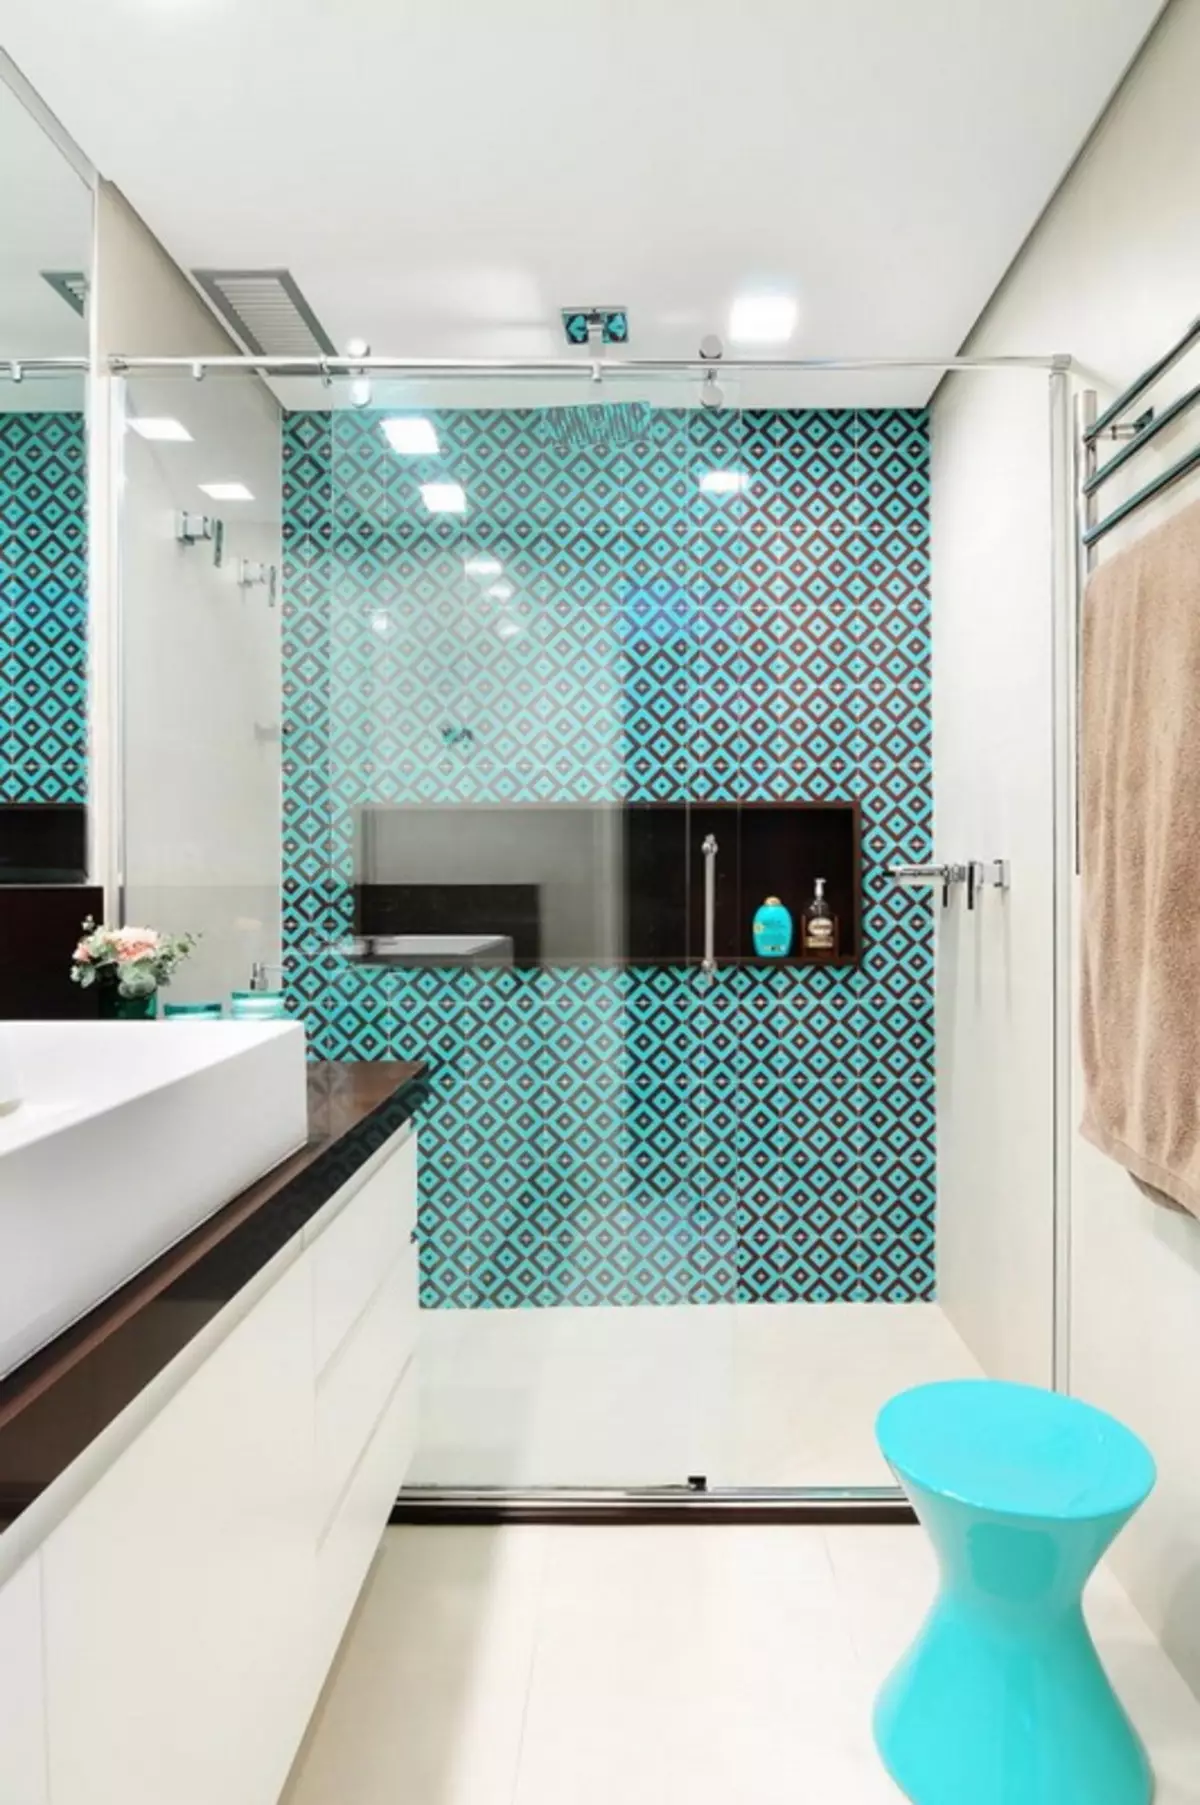 ห้องน้ำสีเขียวขุ่น (61 รูป): ตัวอย่างของการออกแบบห้องน้ำในสีนี้ เราเข้าใจในสีสร้างการตกแต่งภายในที่สวยงาม 10203_6